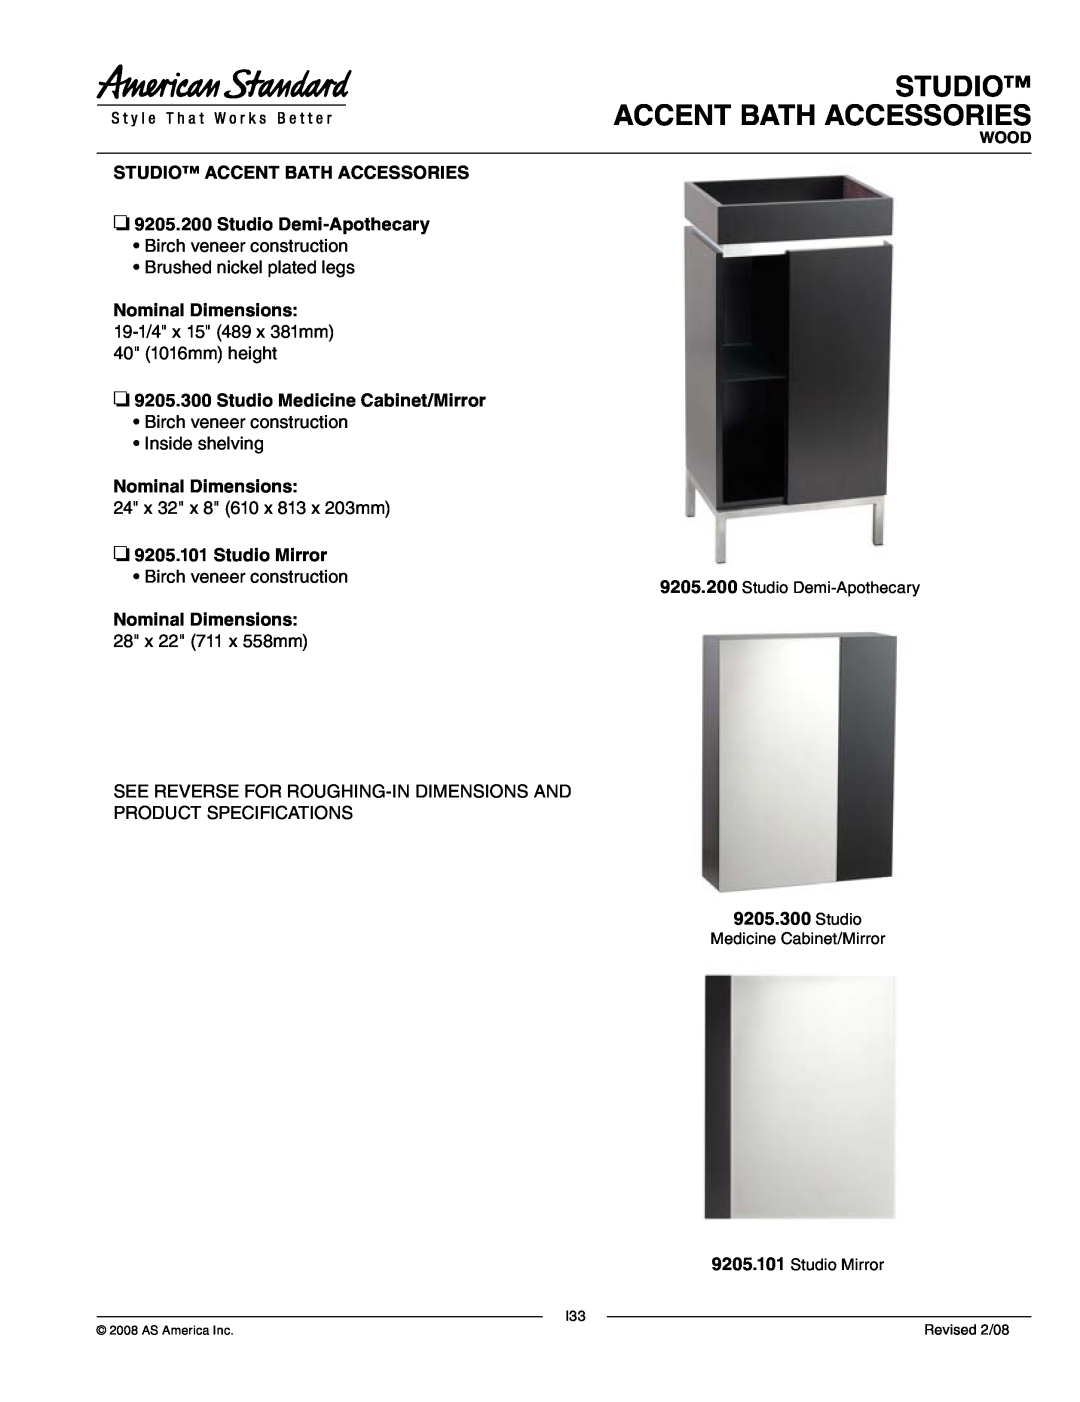 American Standard 9205.300 dimensions Studio ACCENT BATH ACCESSORIES, Nominal Dimensions, Studio Medicine Cabinet/Mirror 